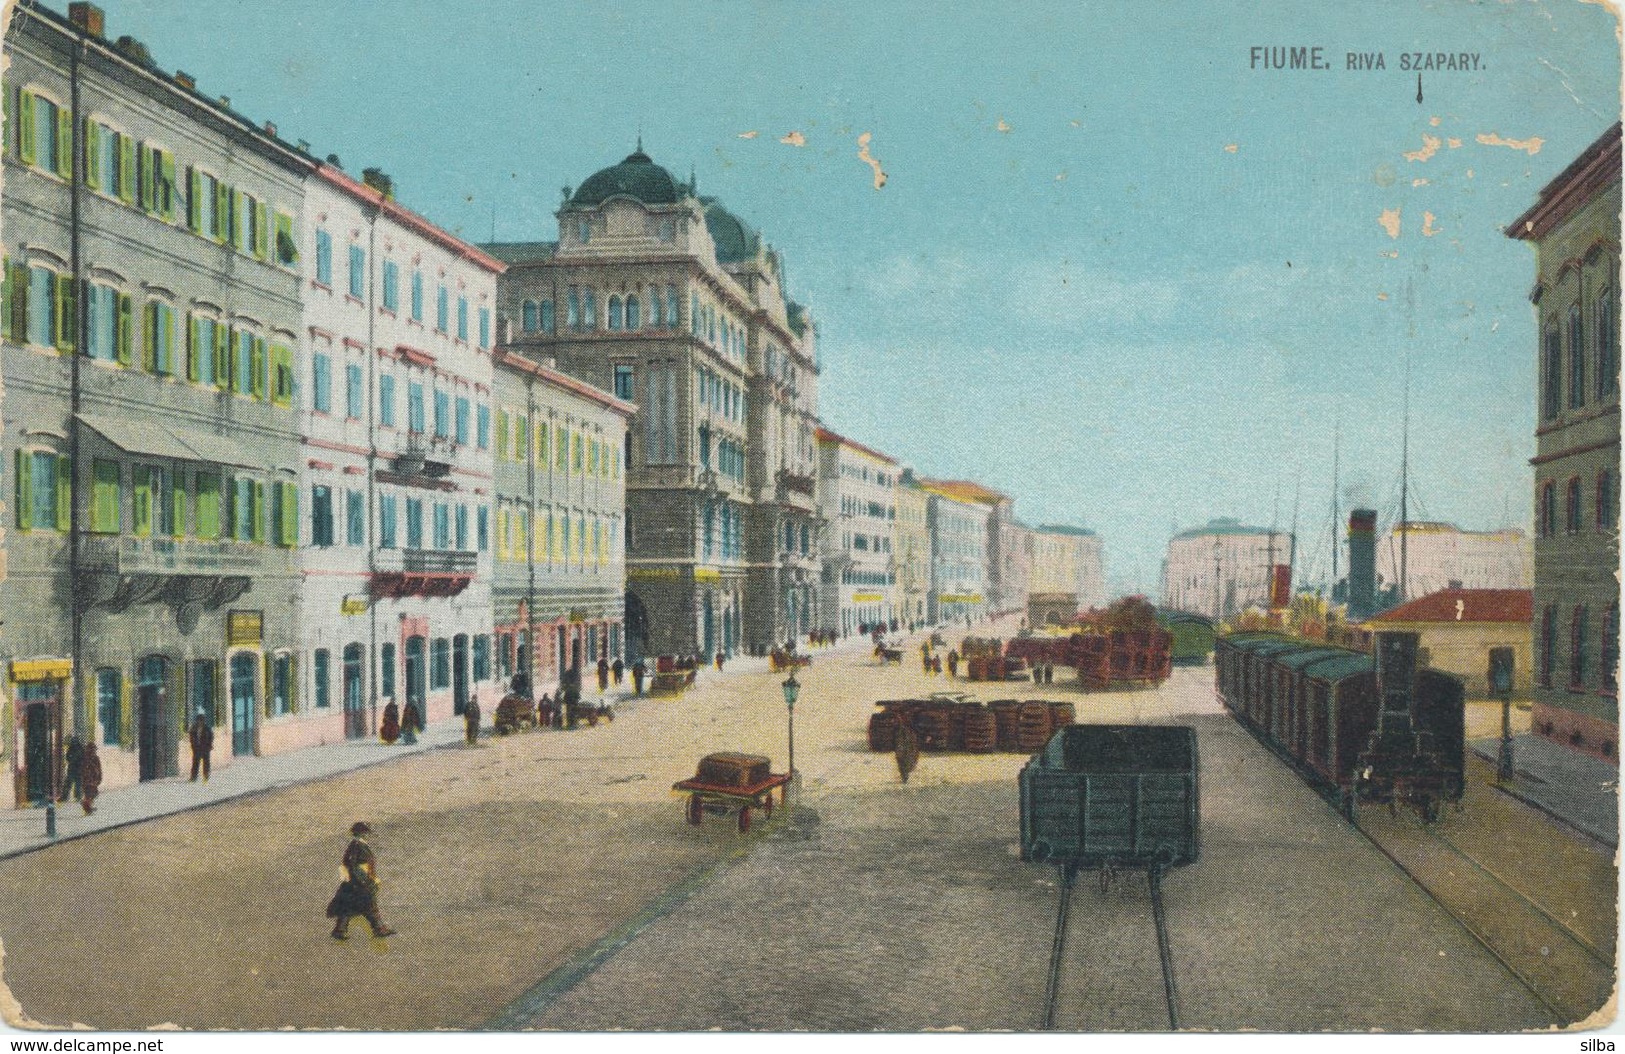 048_001 Rijeka Fiume 1918 - Riva Szapary.jpg